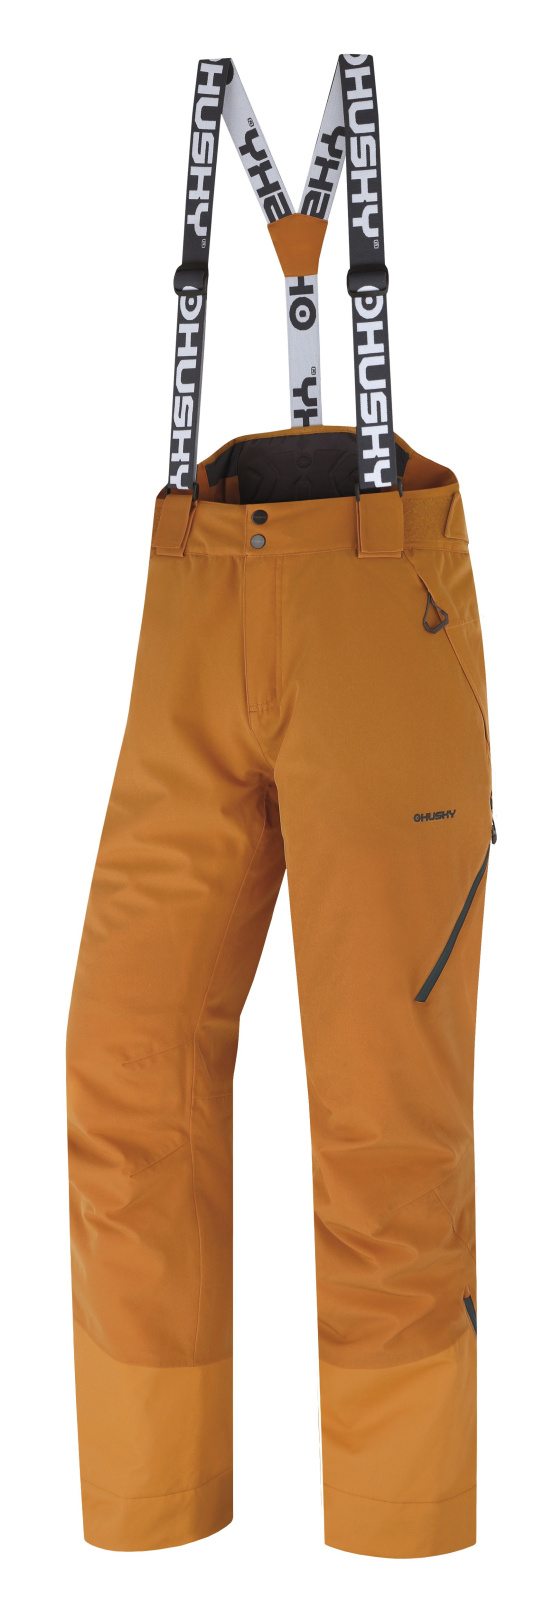 E-shop Husky Pánské lyžařské kalhoty Mitaly M mustard